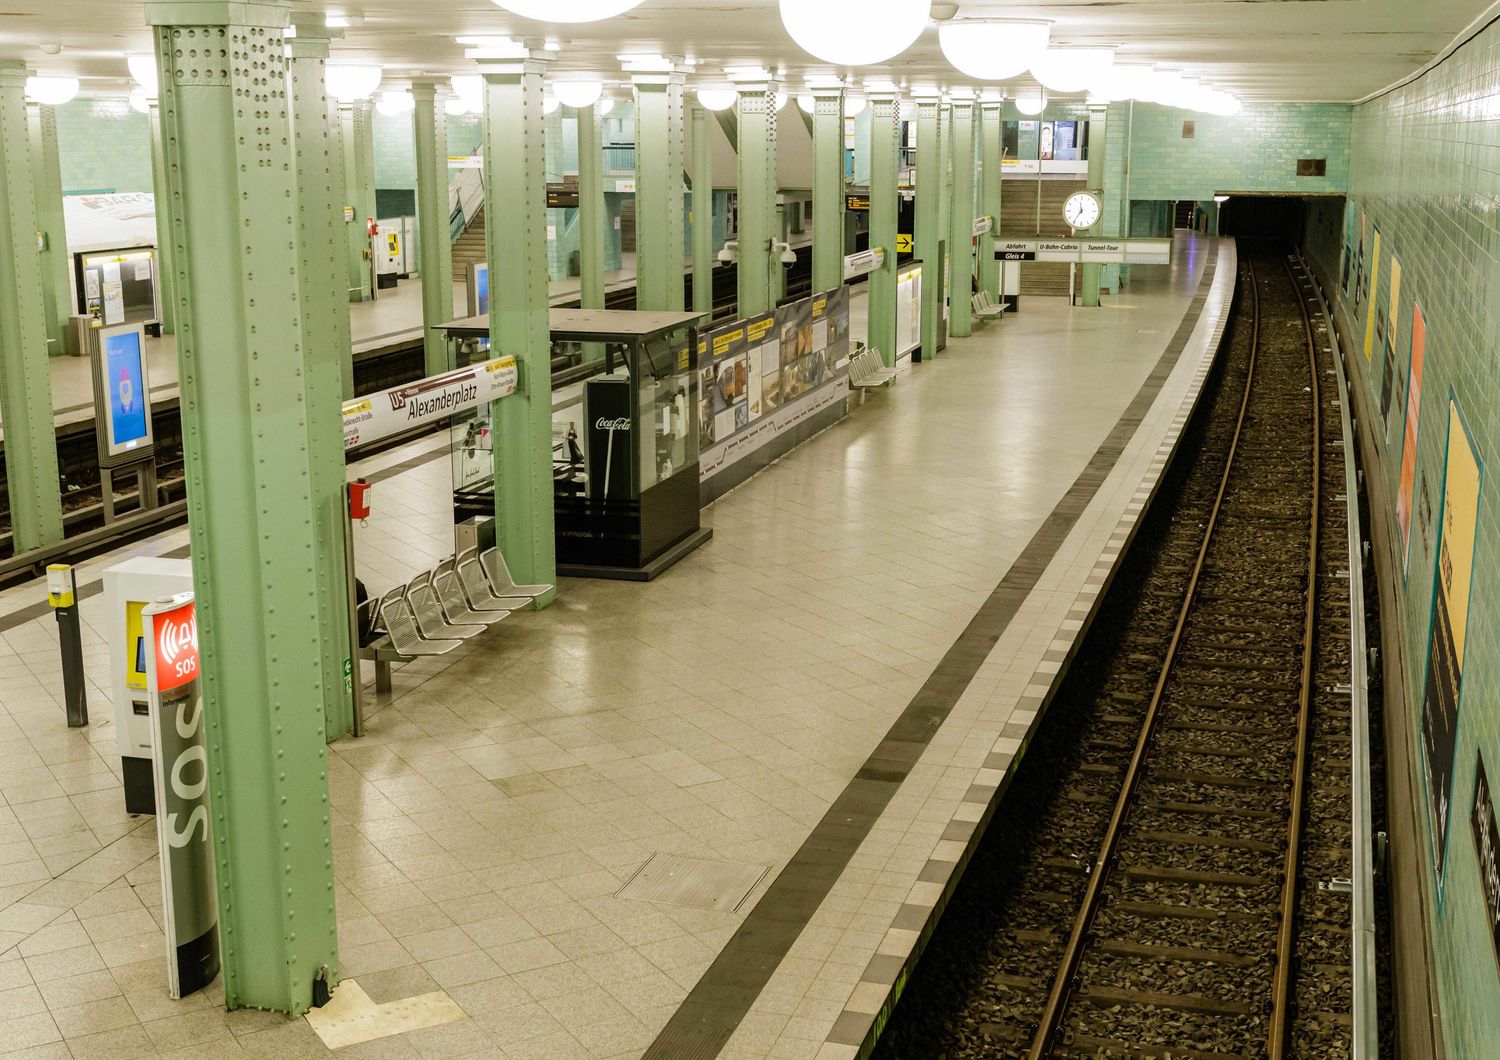 La metropolitana di Berlino deserta per le restrizioni imposte per il coronavirus